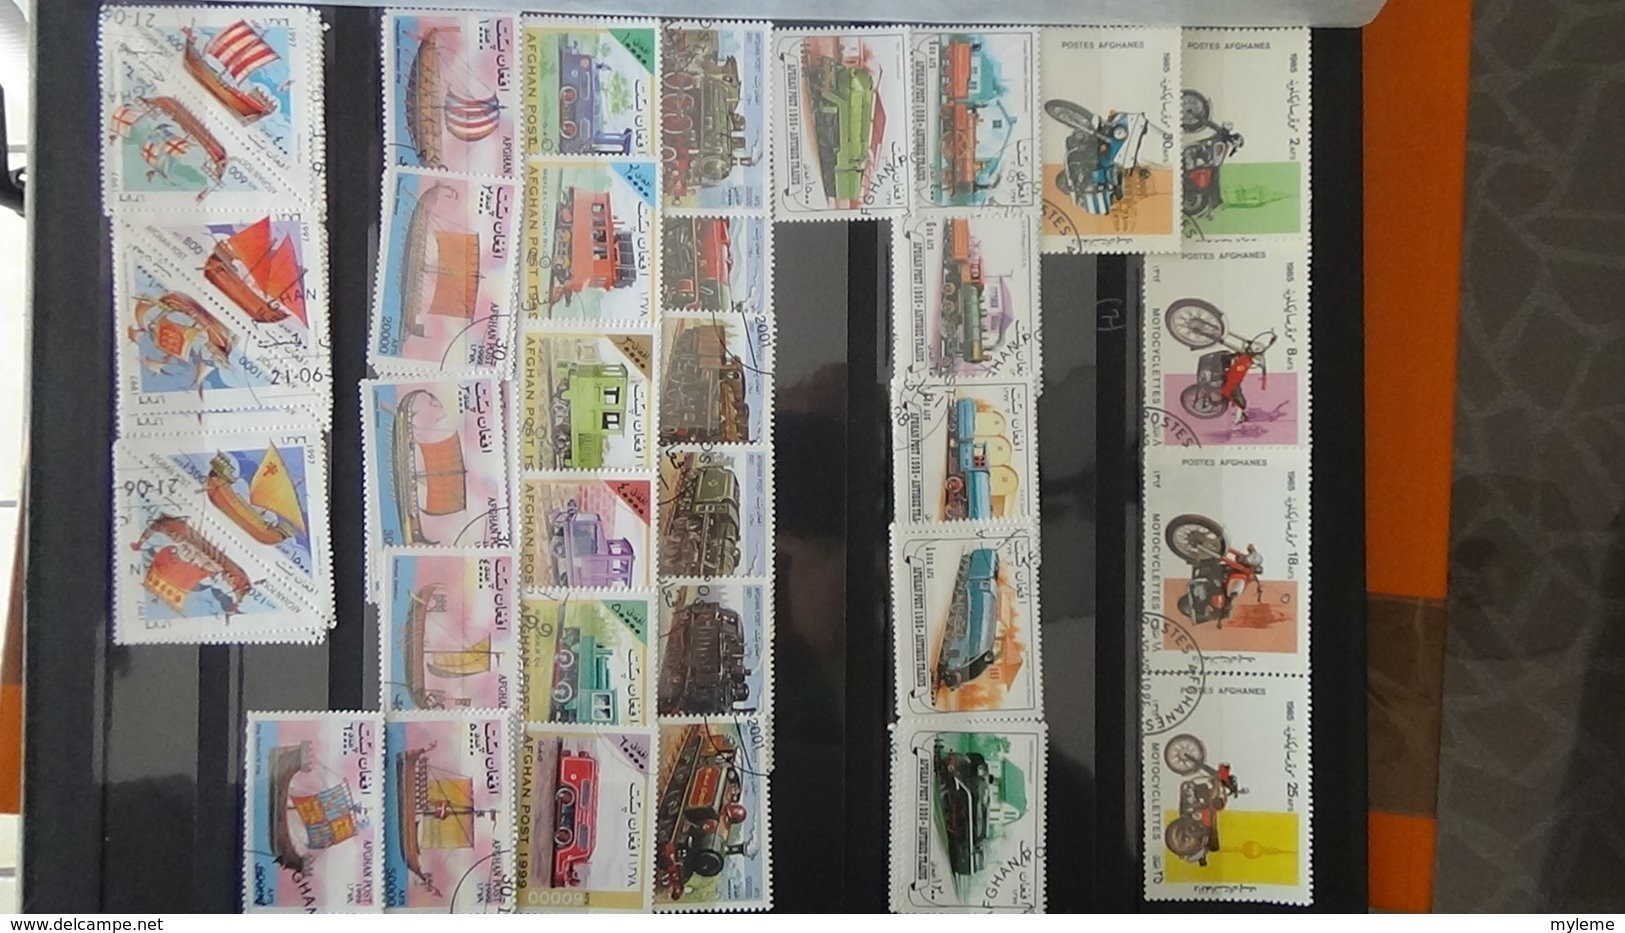 Collection timbres d'AFGHANASTAN dont des doubles superposés. Idéal pour thématiques A saisir !!!